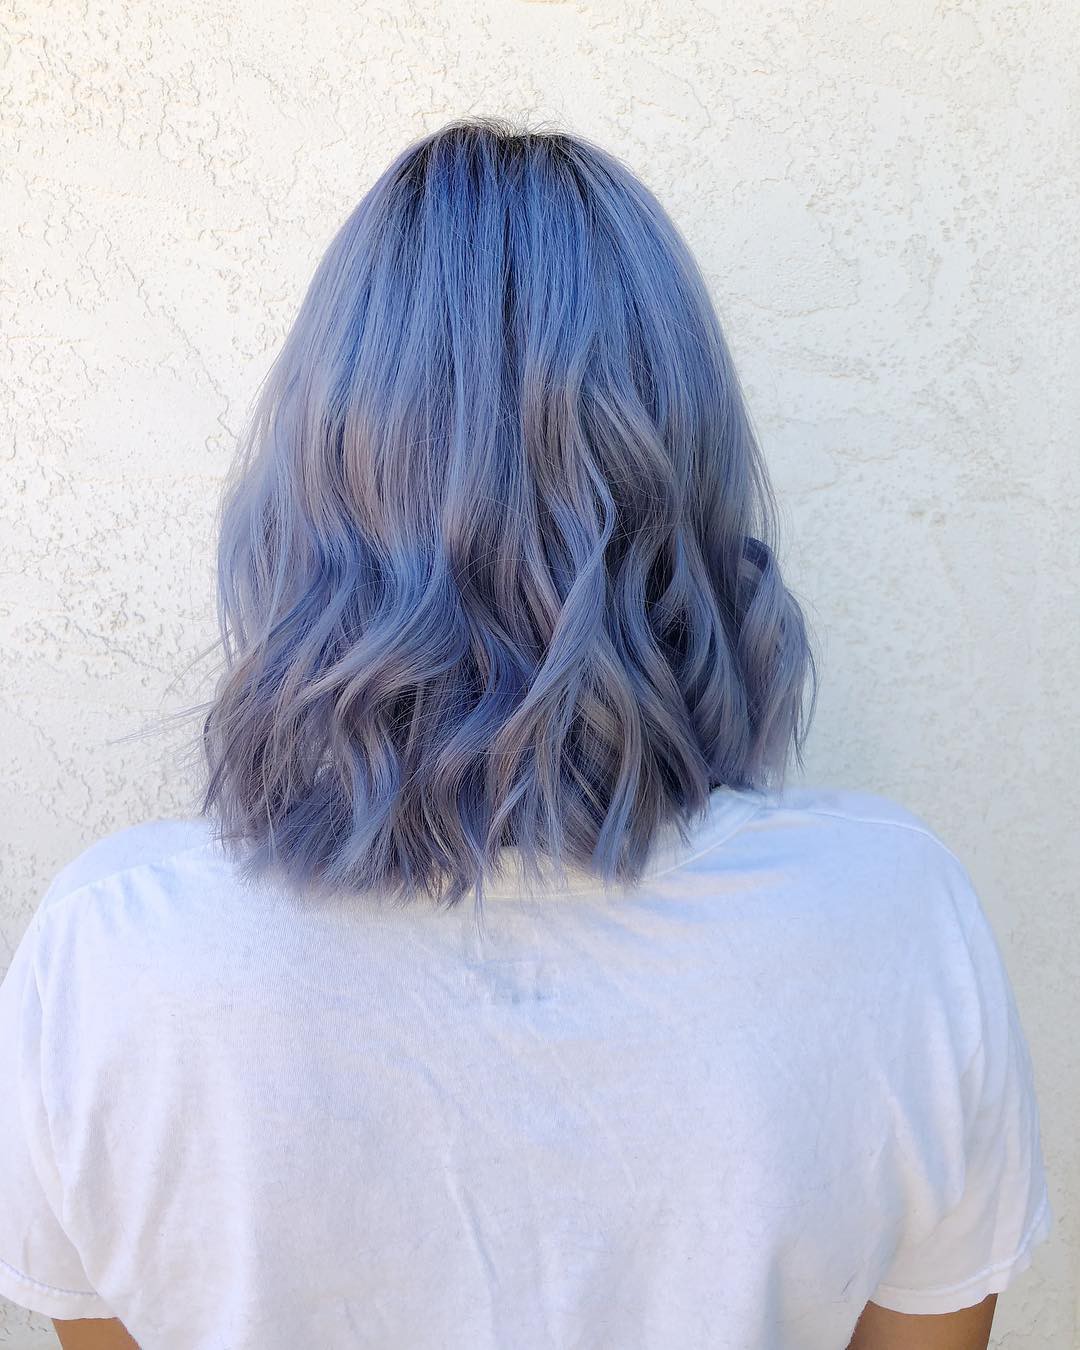 Điều gì sẽ xảy ra khi bạn nhuộm tóc màu tím xanh? Sự độc đáo và nổi bật của màu sắc sẽ khiến bạn trở nên thật sự khác biệt. Hãy cùng xem hình ảnh và khám phá sự tuyệt vời của màu tóc này.